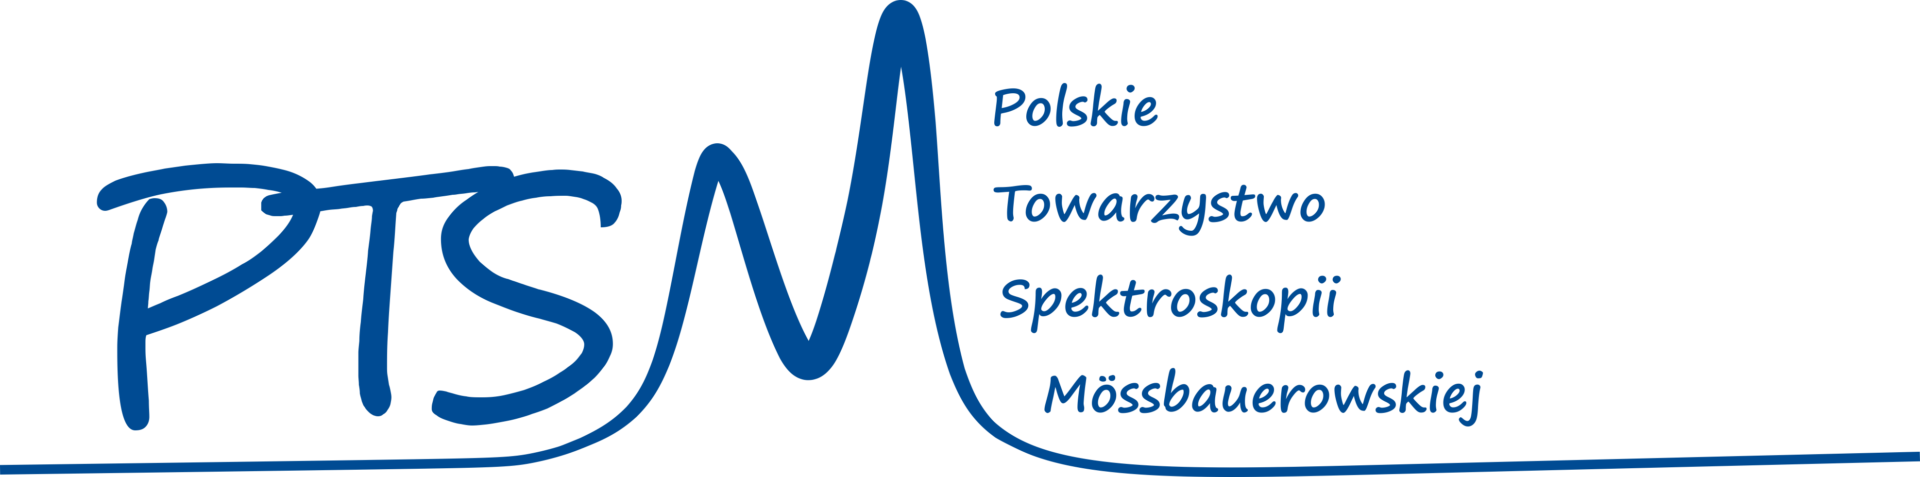 Polskie Towarzystwo Spektroskopii Mössbauerowskiej